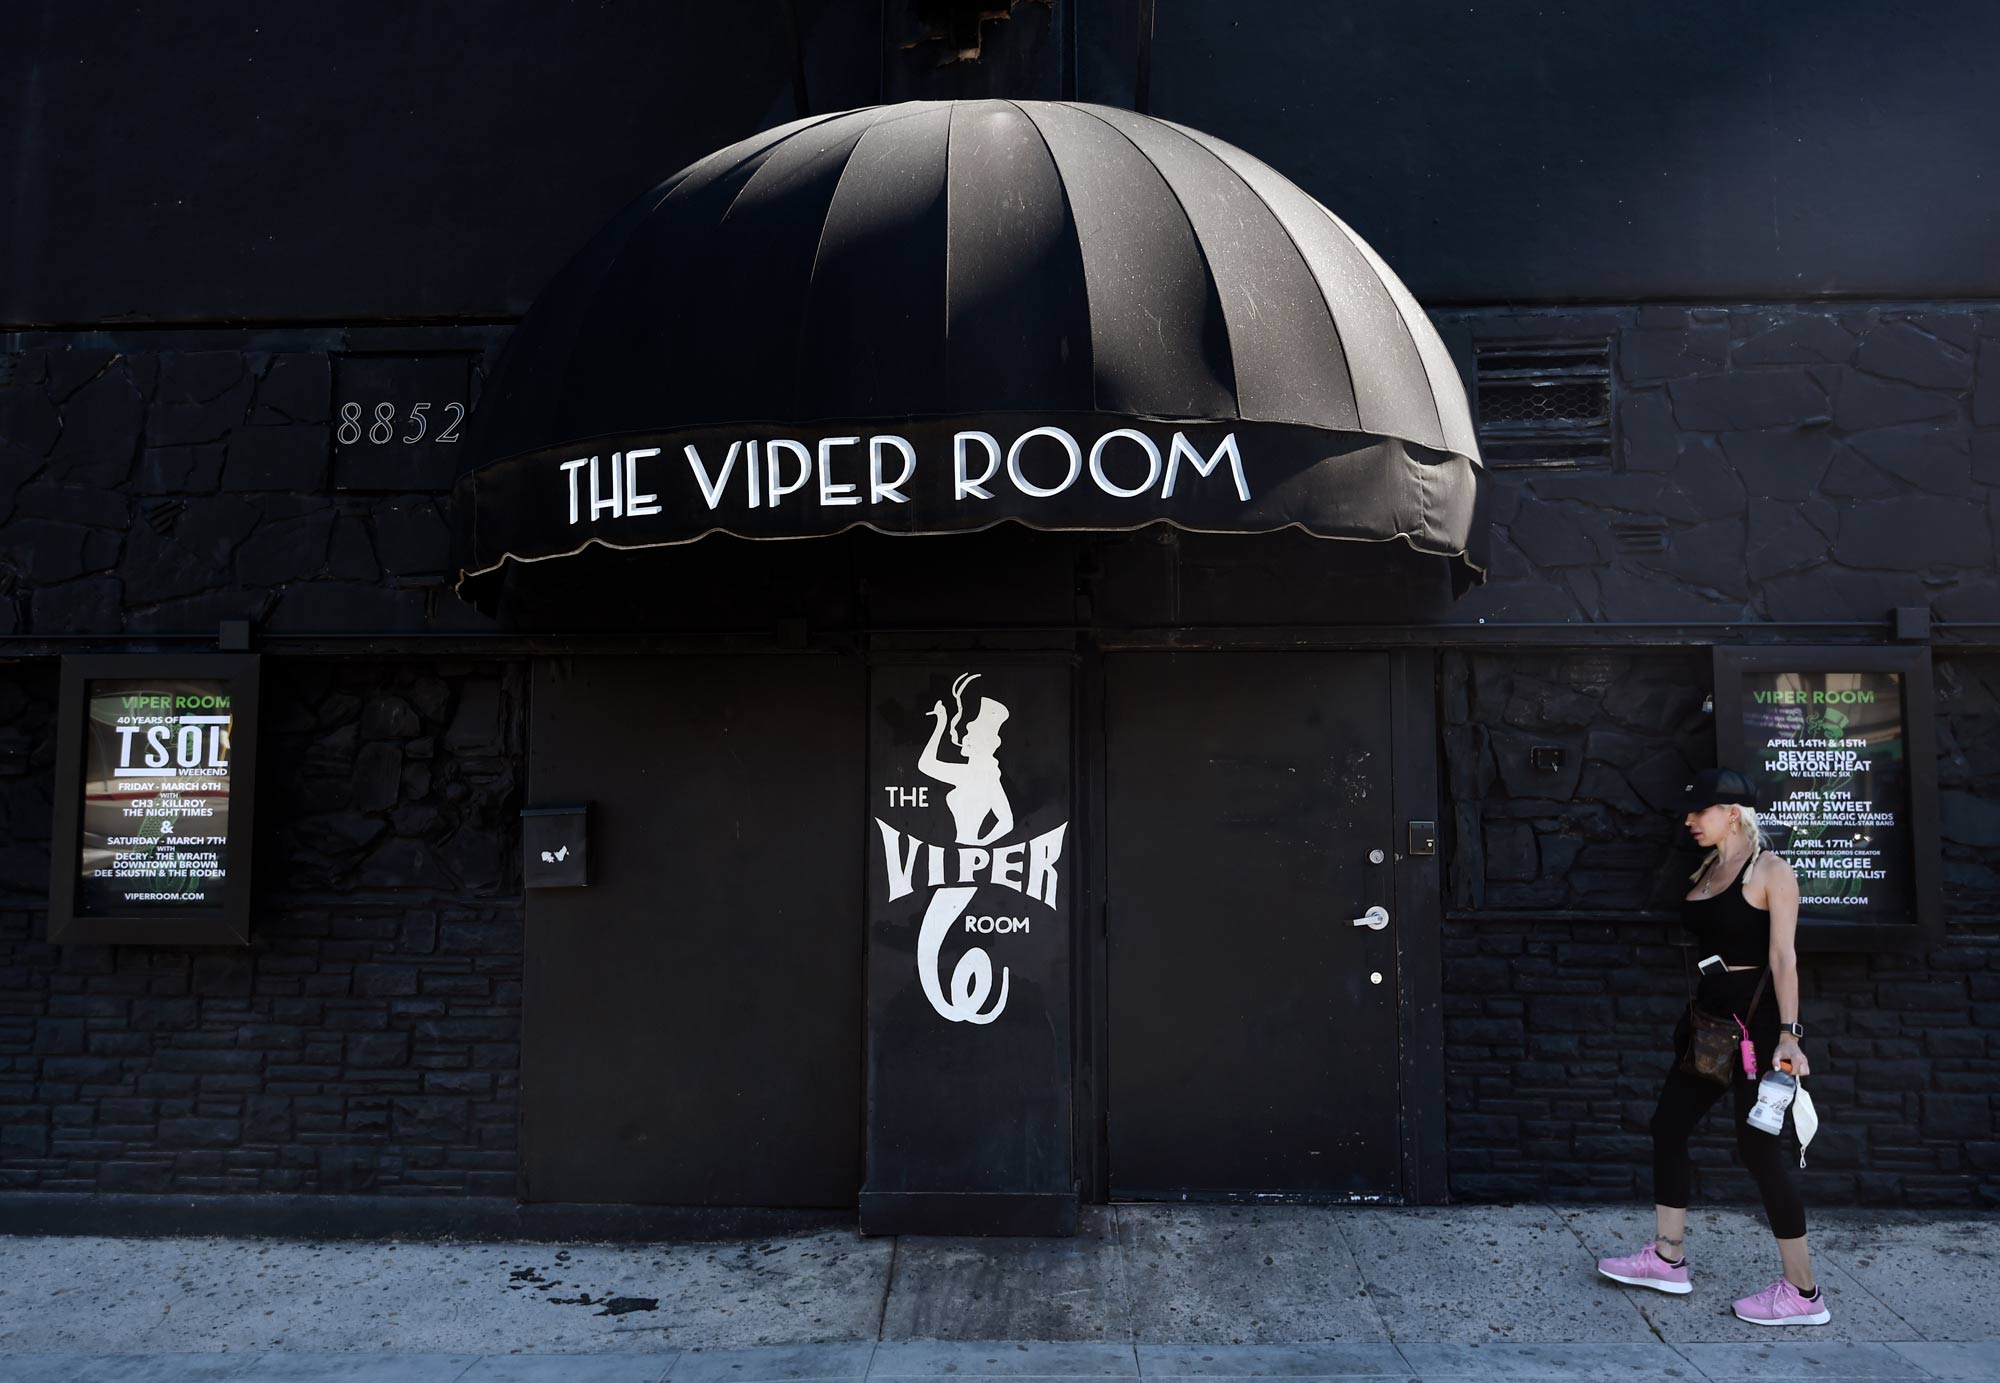 The legendary Viper Room